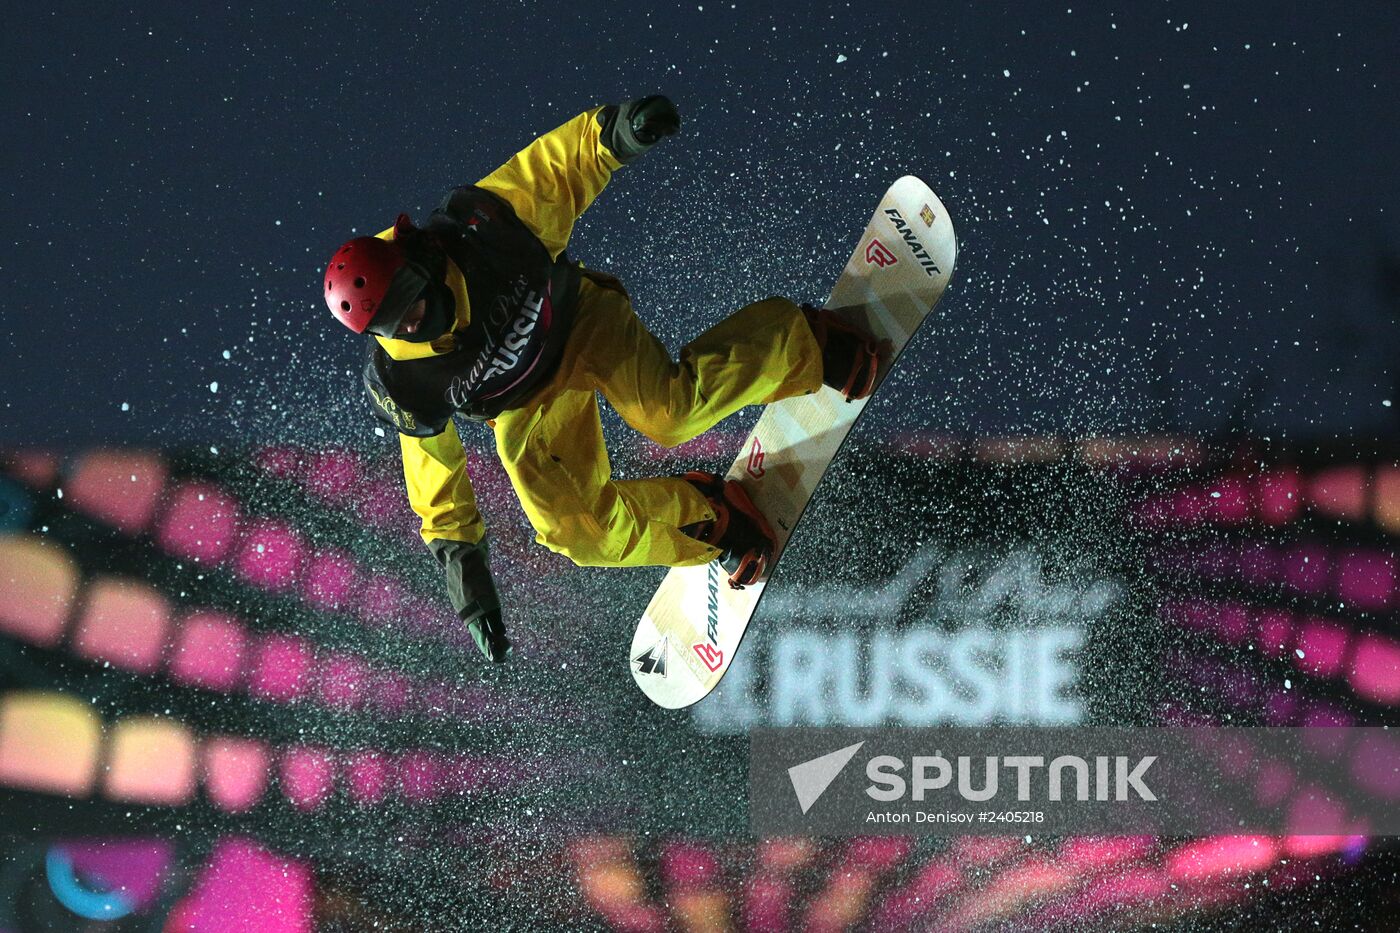 Grand Prix de Russie extreme sports festival